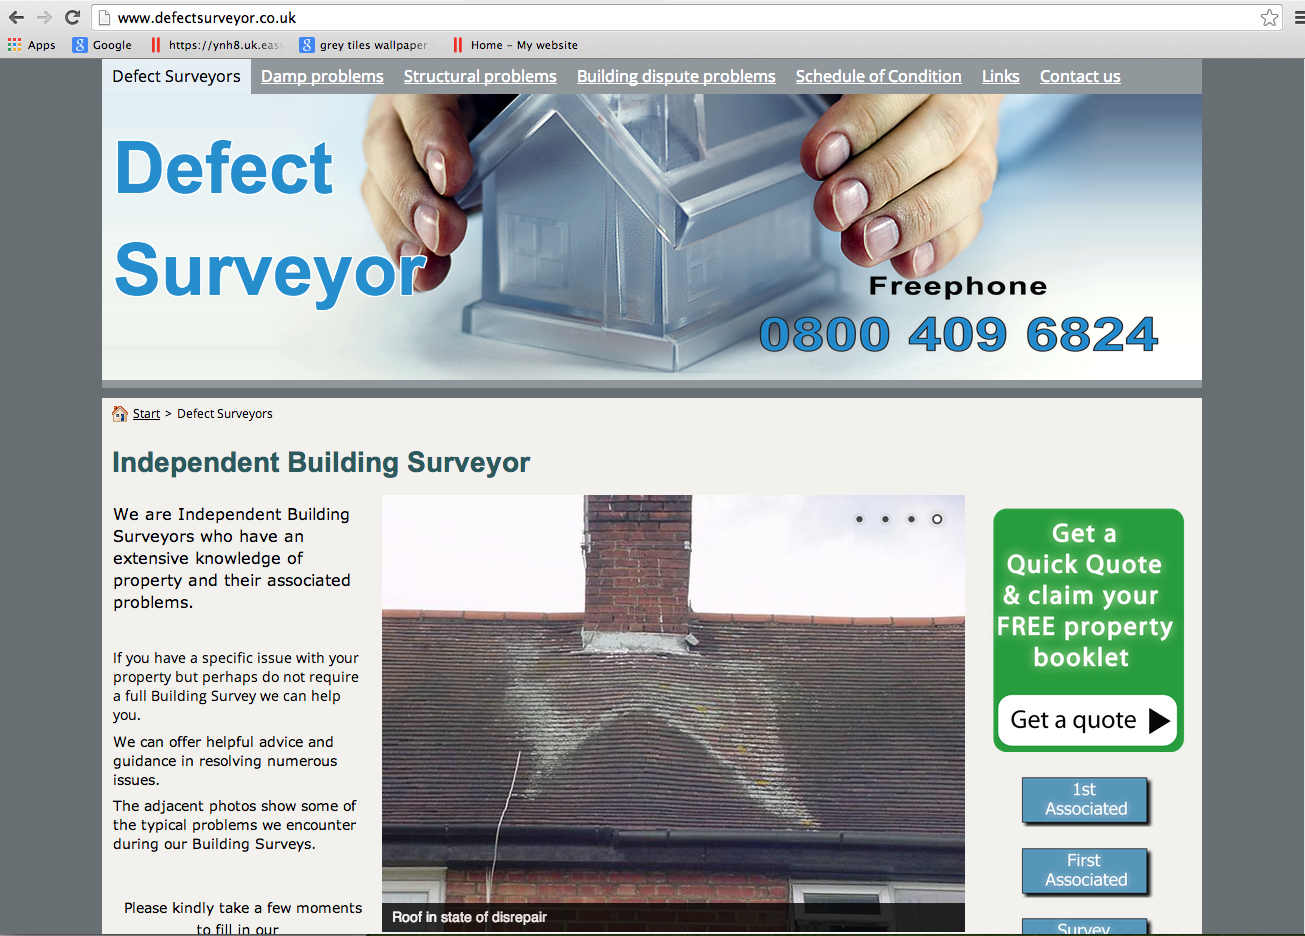  Take a look at DefectSurveyor.co.uk